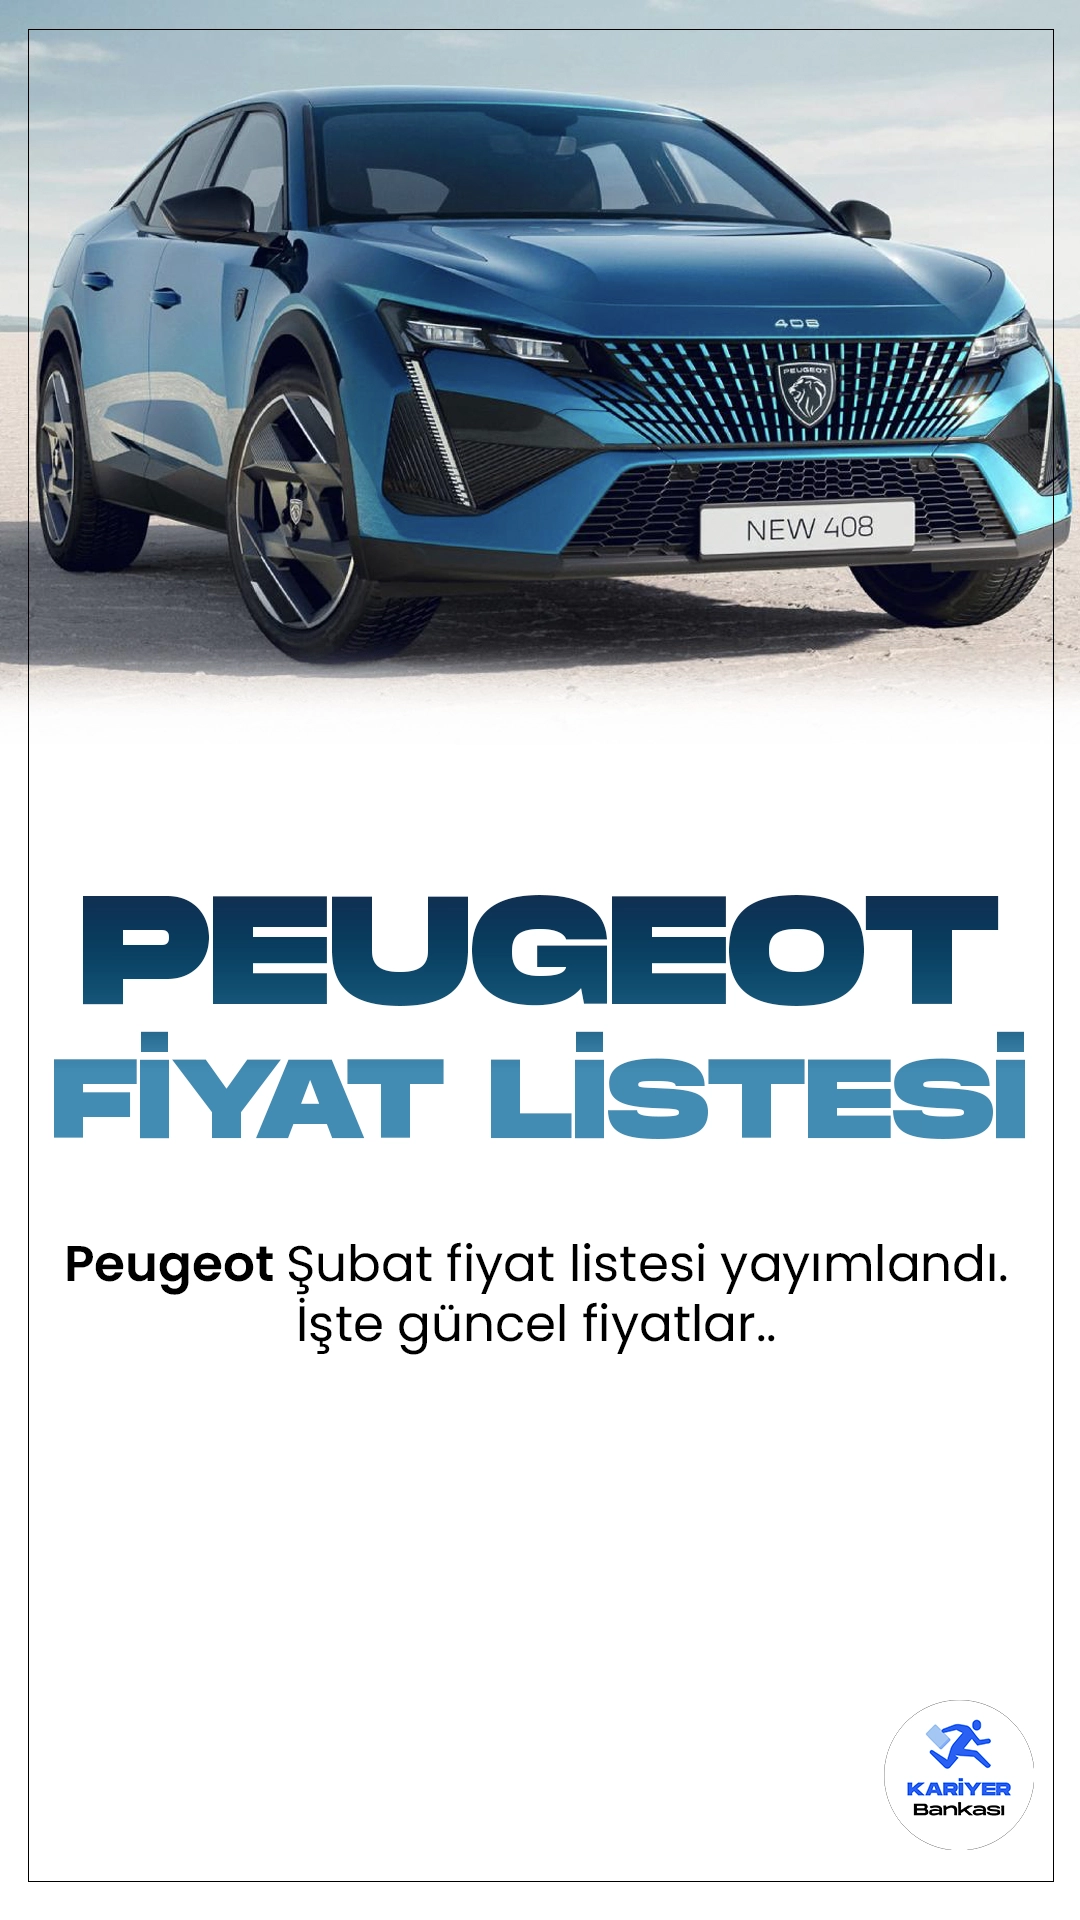 Peugeot Şubat 2024 Fiyat Listesi Yayımlandı! Fransız otomotiv devi Peugeot, geniş ürün yelpazesiyle kullanıcılarına çeşitli seçenekler sunmaya devam ediyor. Peugeot'un kompakt segmentteki iddialı modeli 208, şehir içi kullanım için ideal bir seçenek sunuyor. Yenilikçi tasarımı, yakıt verimliliği ve teknolojik özellikleriyle dikkat çeken 208, sürüş keyfini ve pratikliği bir arada sunuyor.